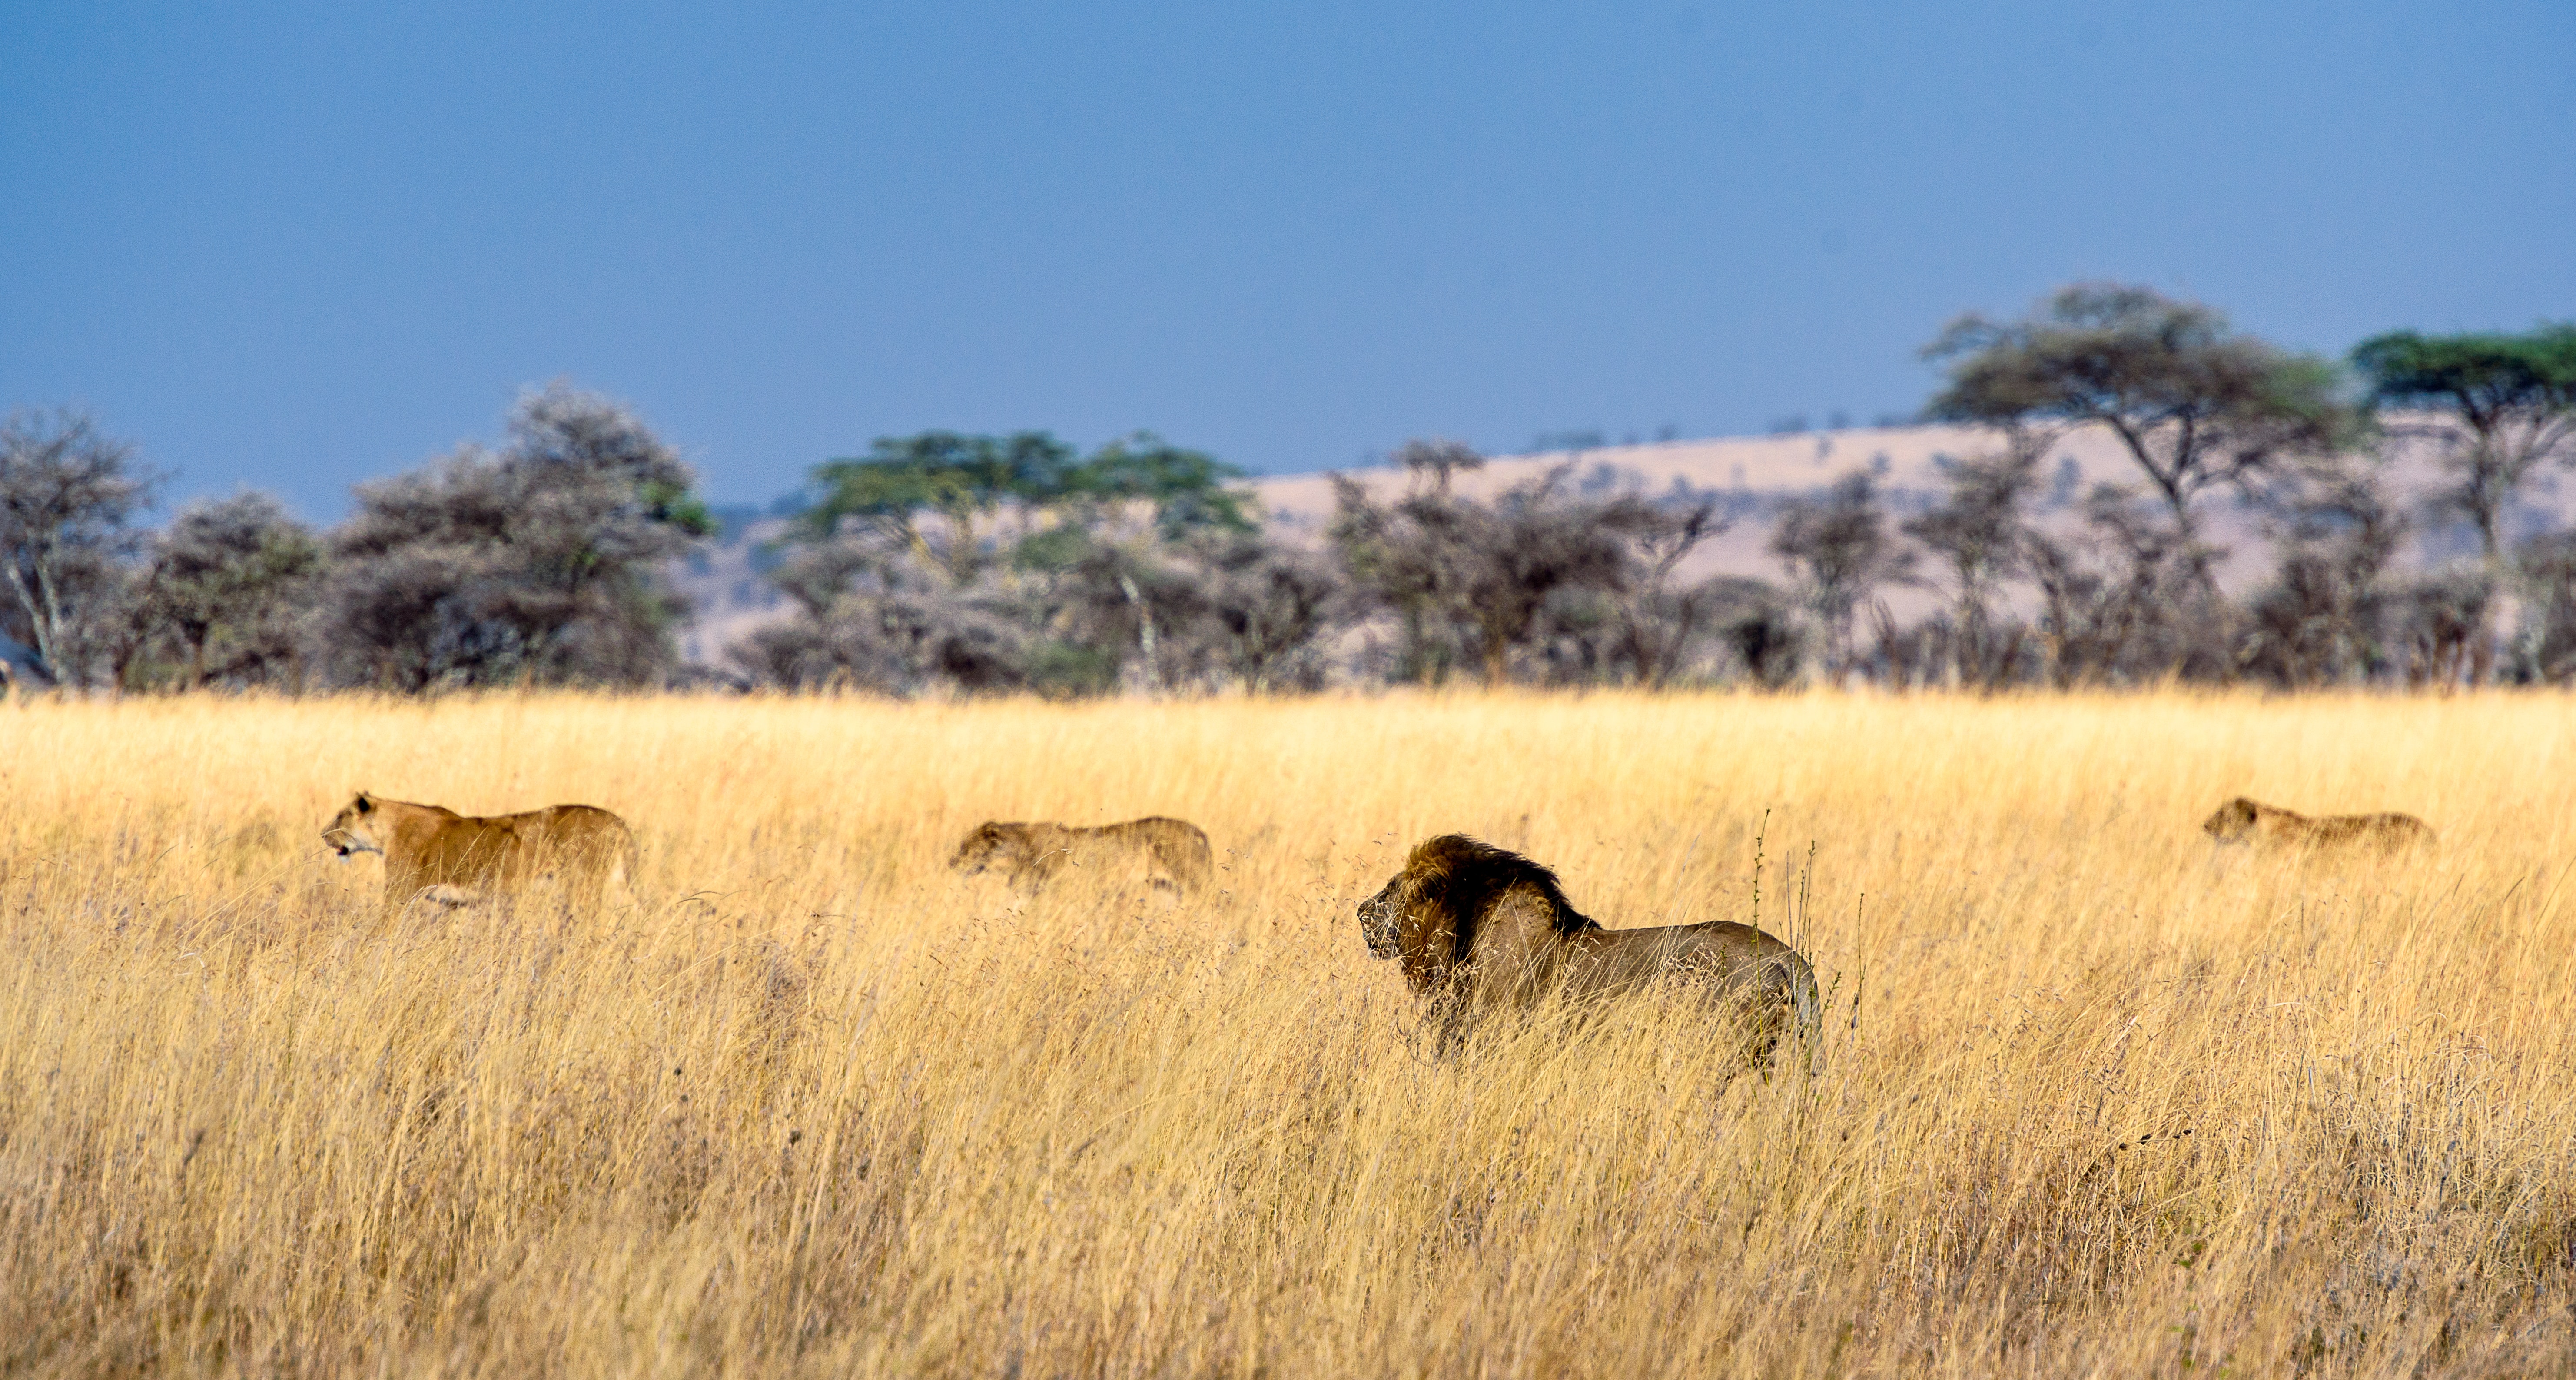 2. The Serengeti